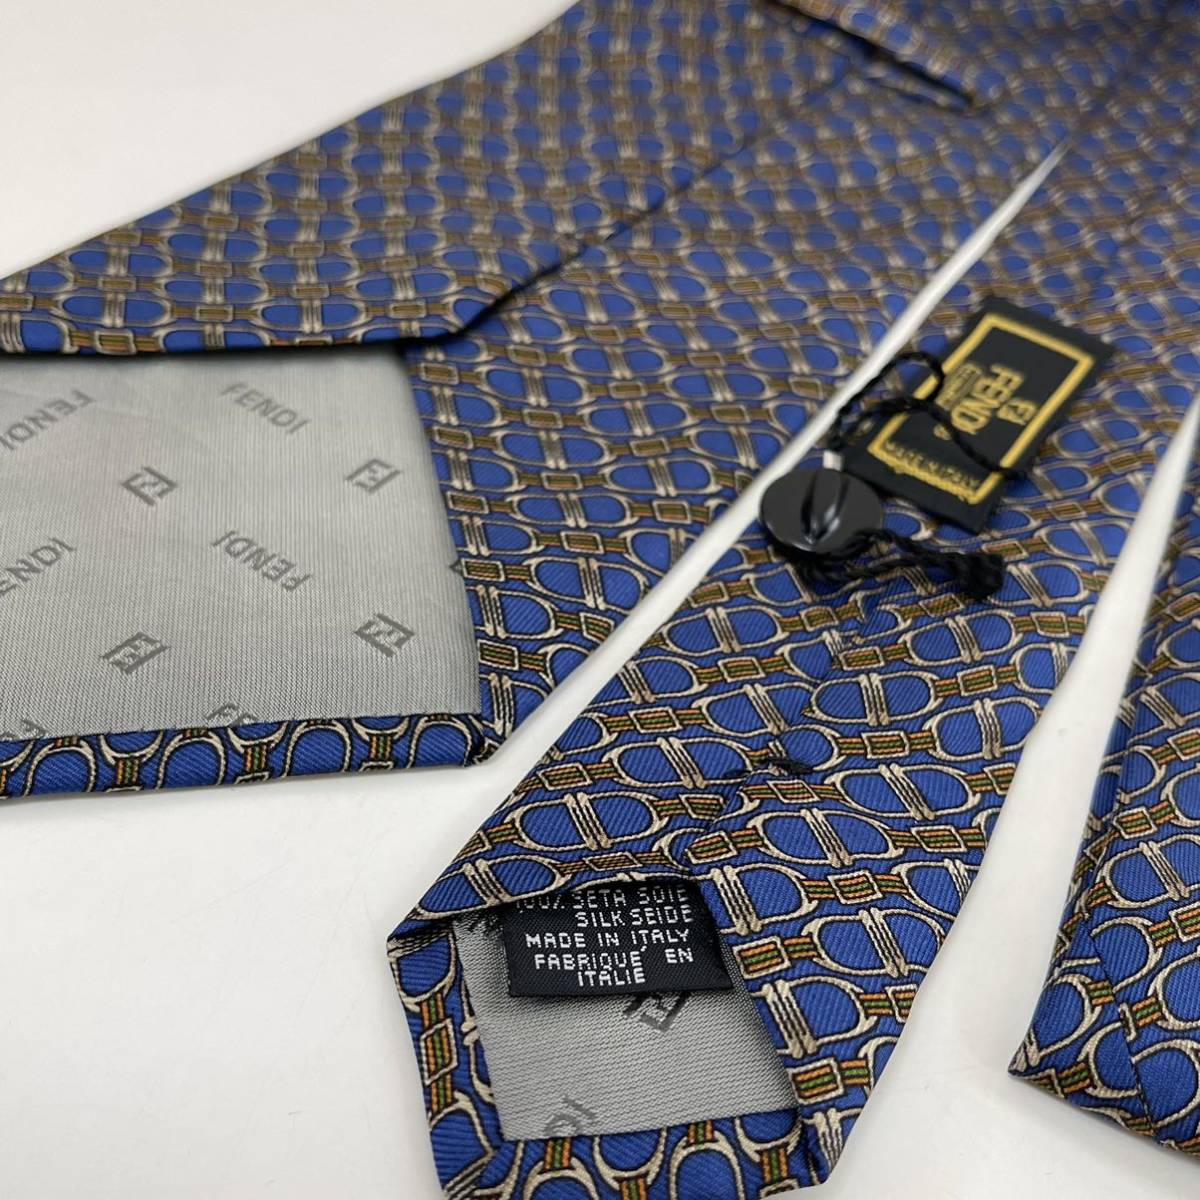 FENDI( Fendi ) blue necktie new goods unused tag attaching 